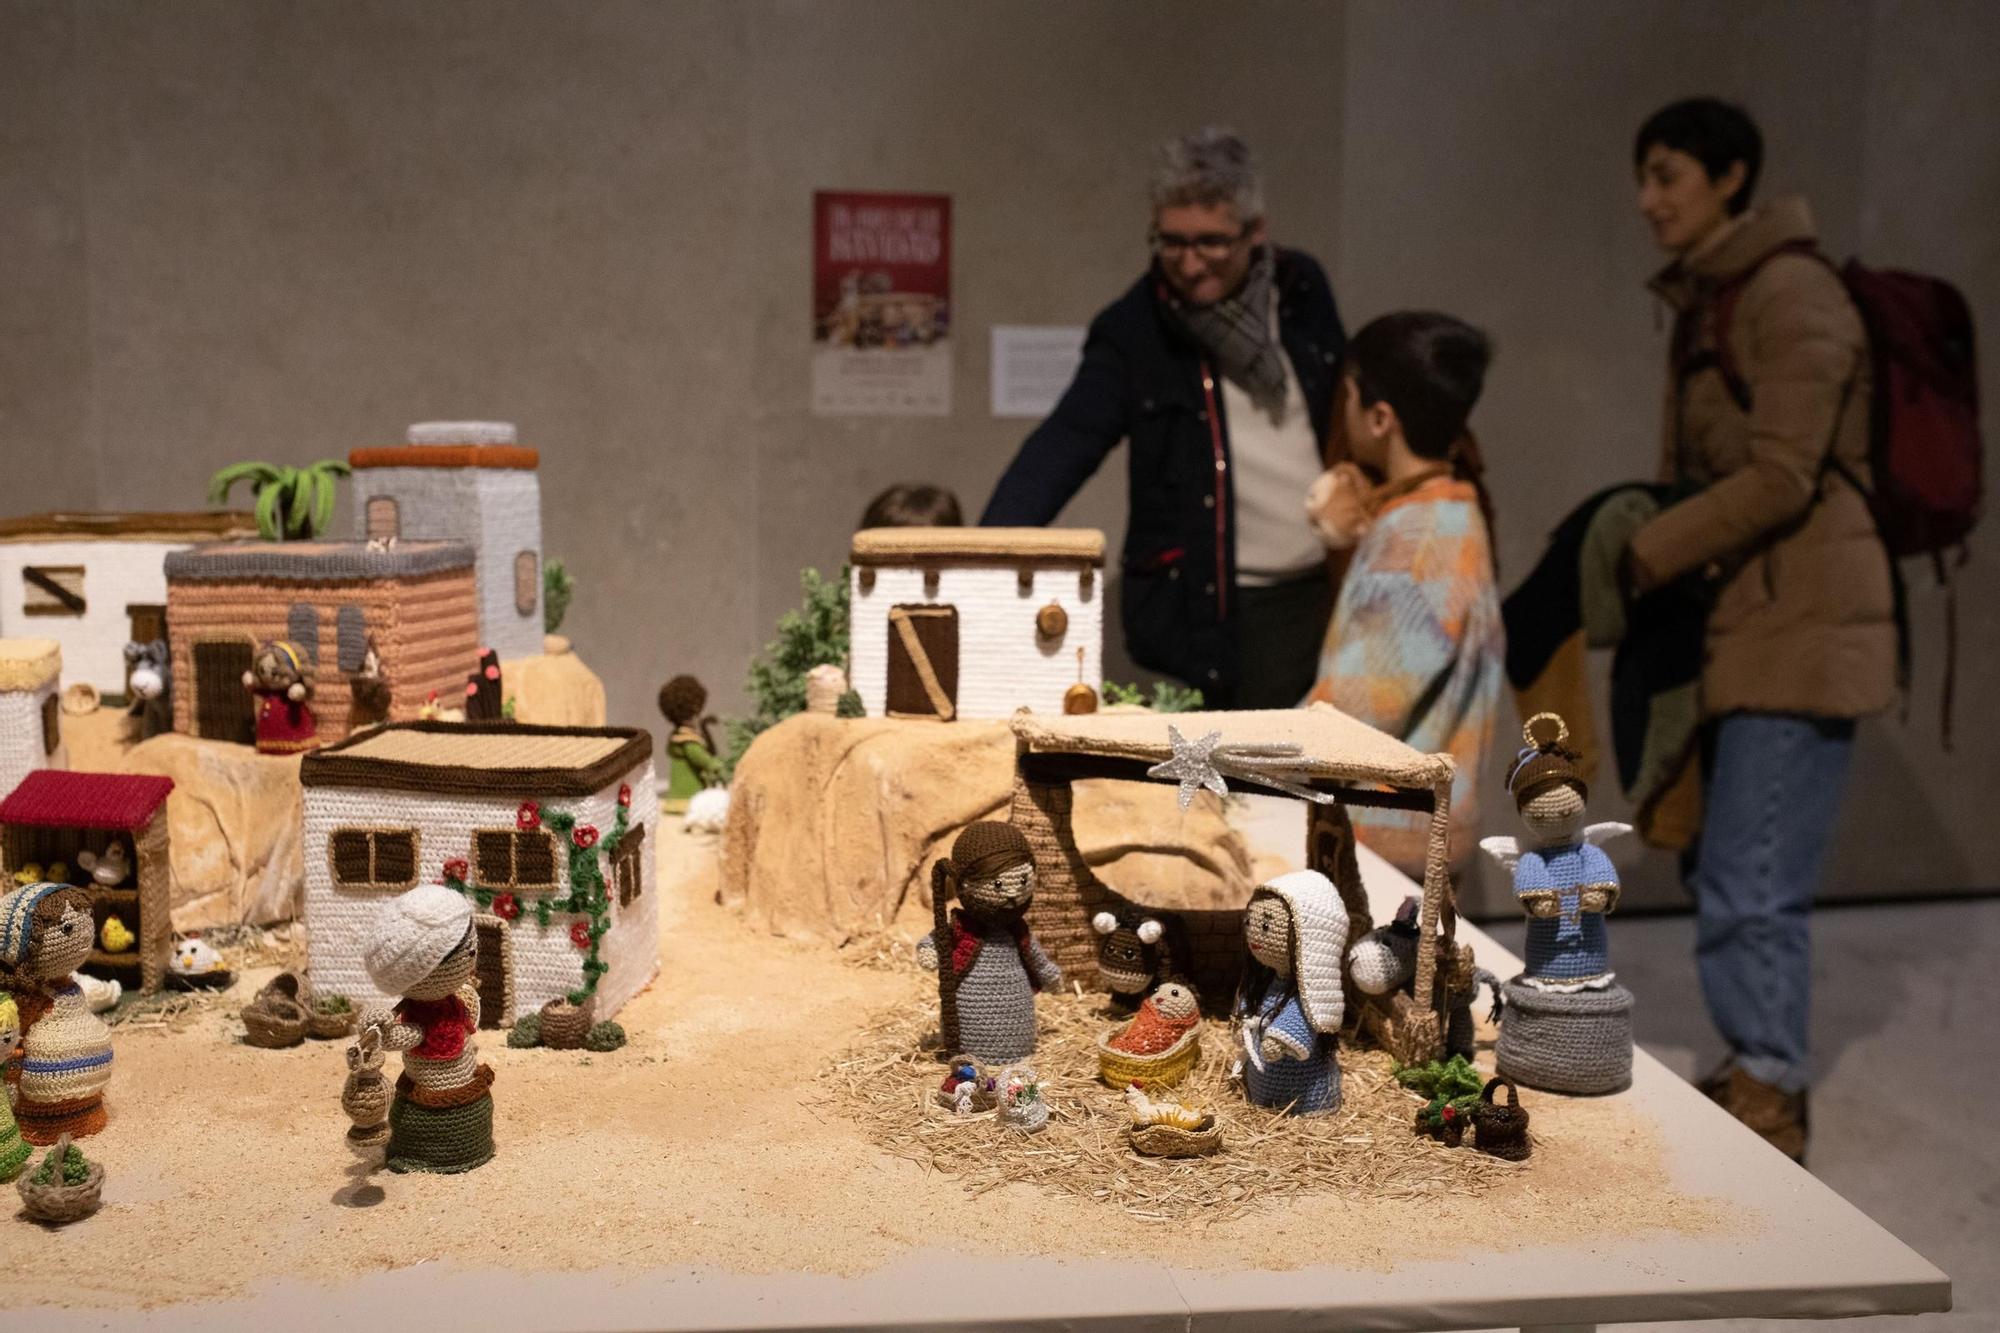 GALERÍA | Belén “Al hilo de Navidad” de la Asociación Cultural “El Portal de San Vicente”